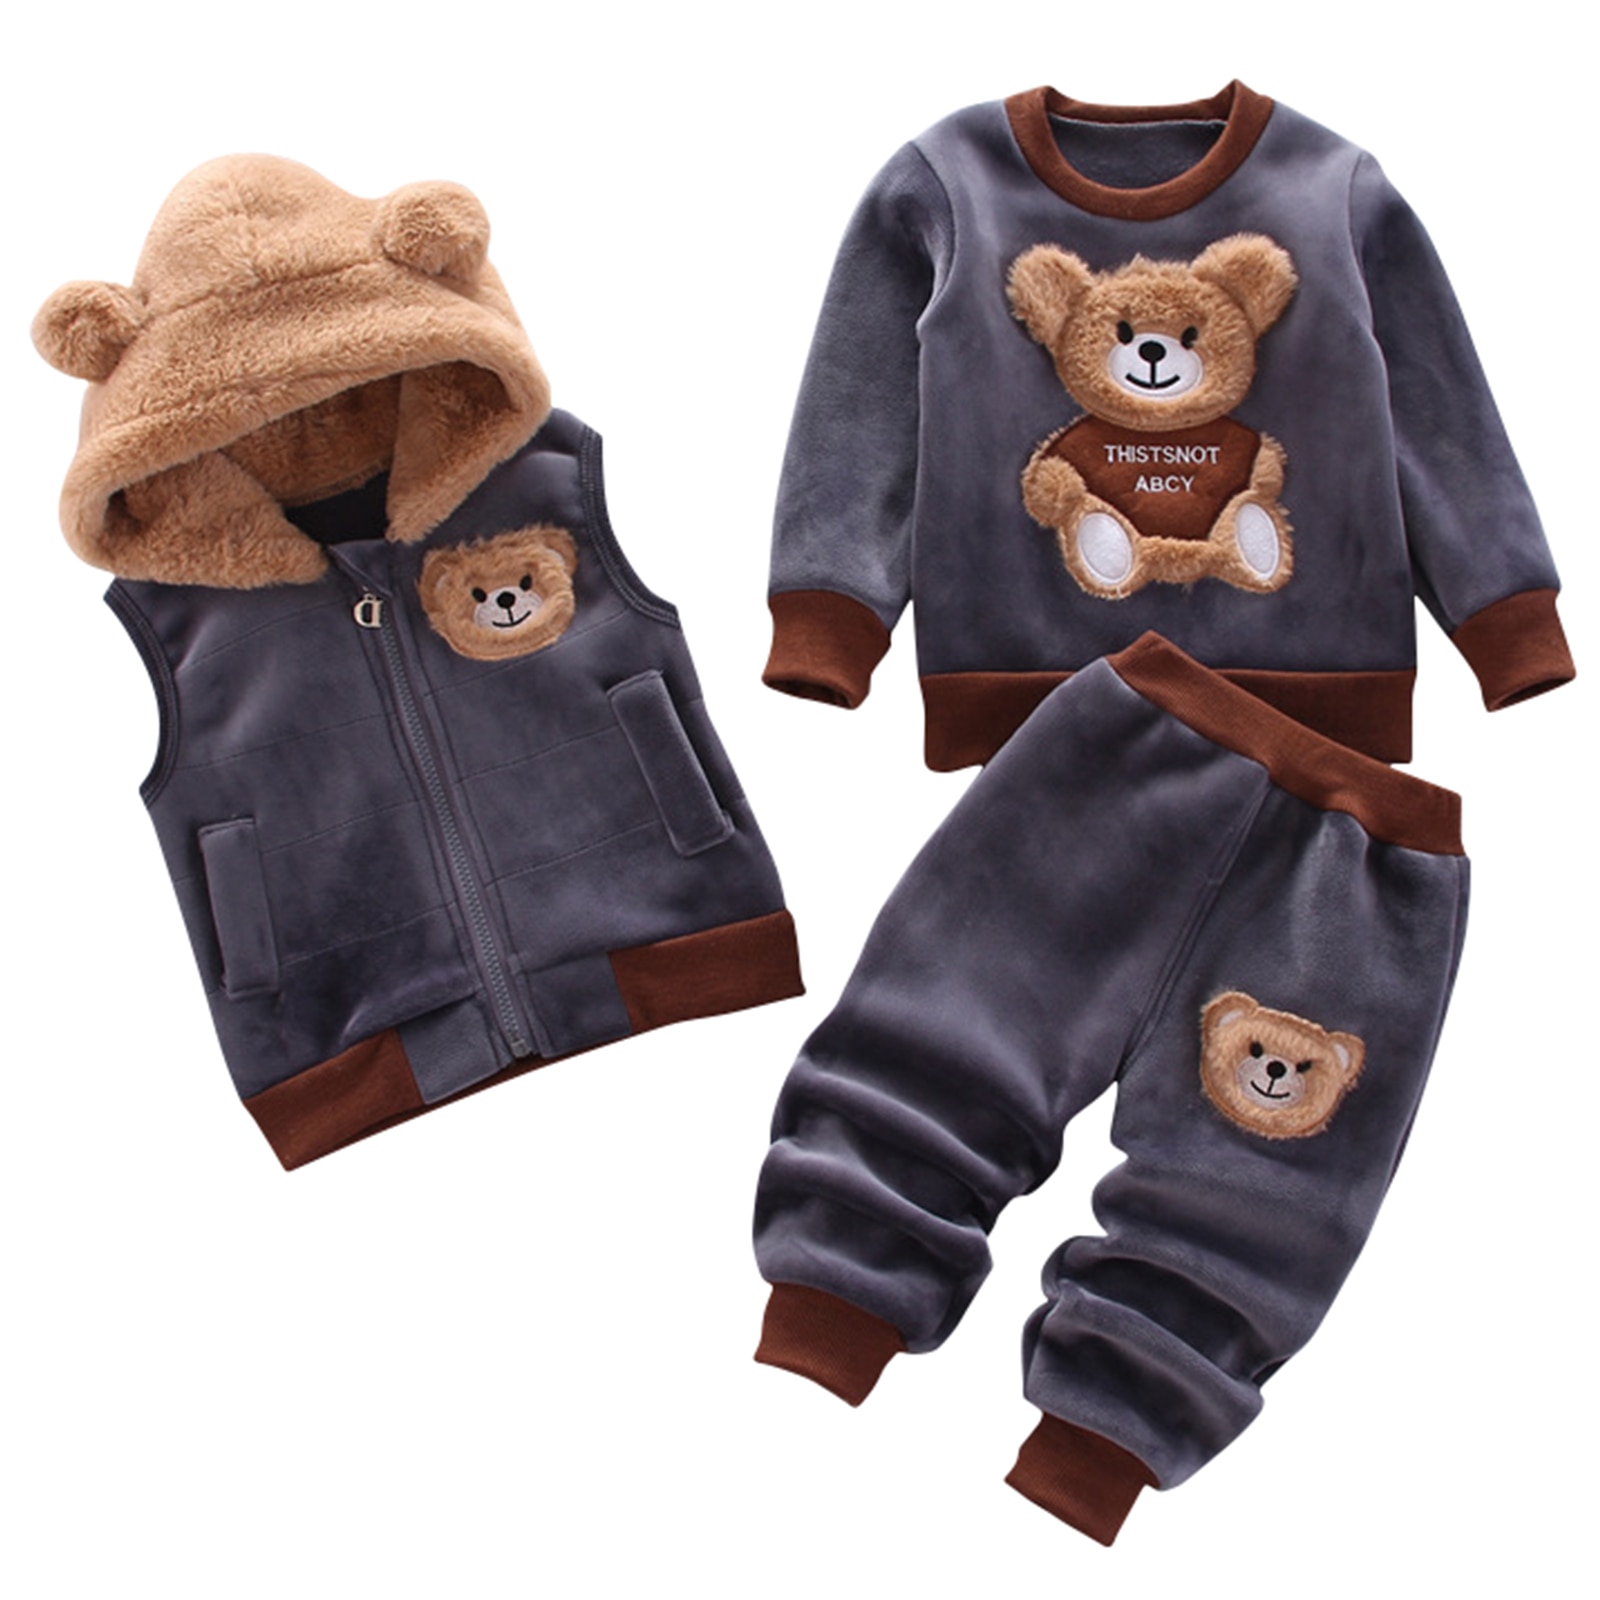 H0bb61f6140c343d1885d02f178ee2870K Fashion Baby Boys Clothes Autumn Winter Warm Baby